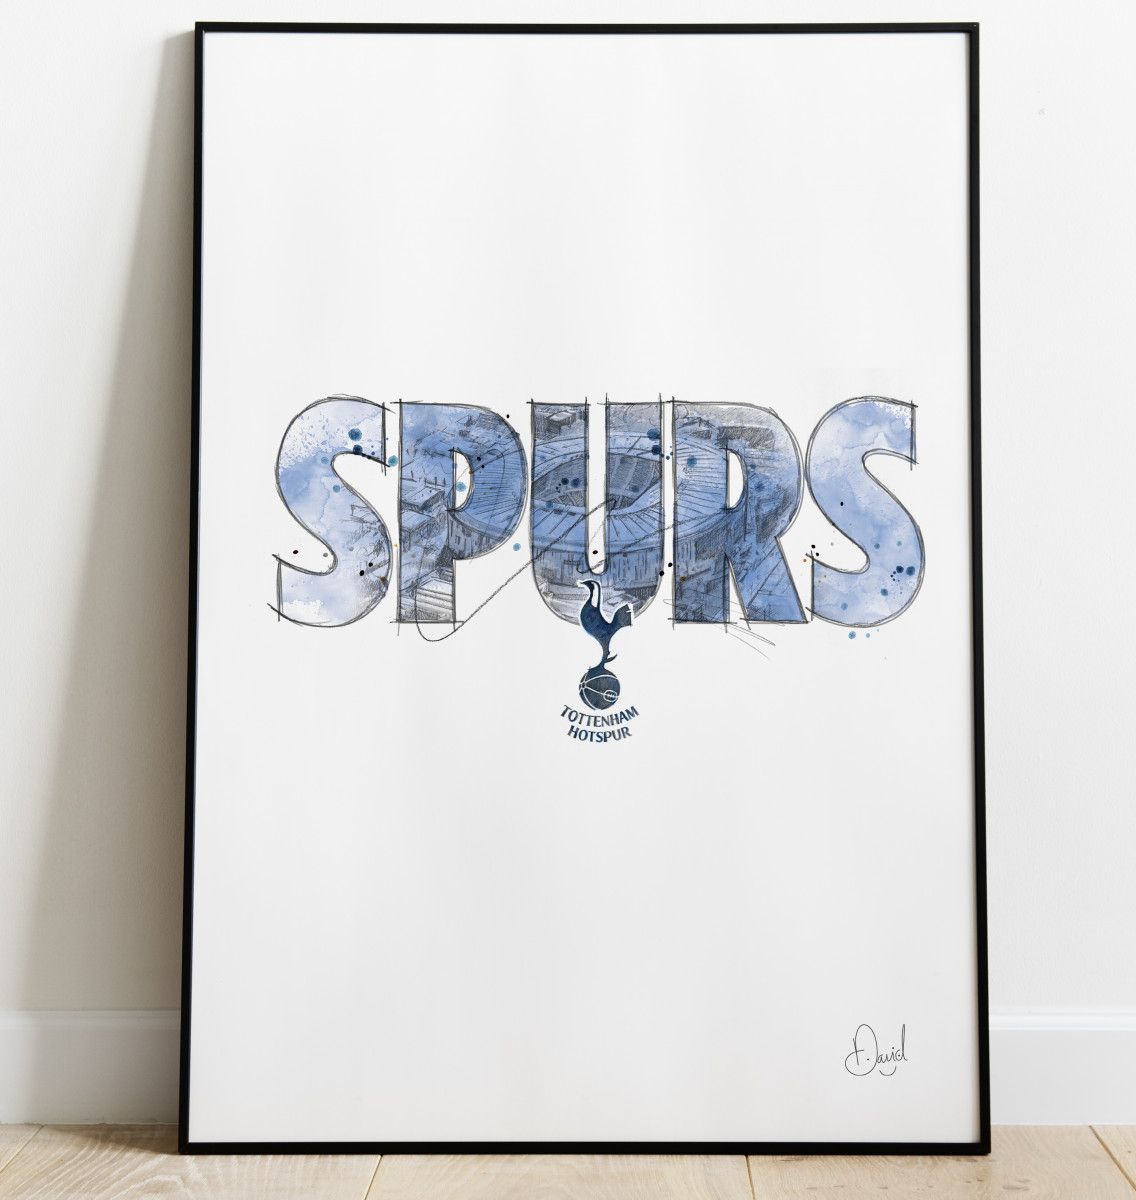 Tottenham Hotspur - Spurs art print